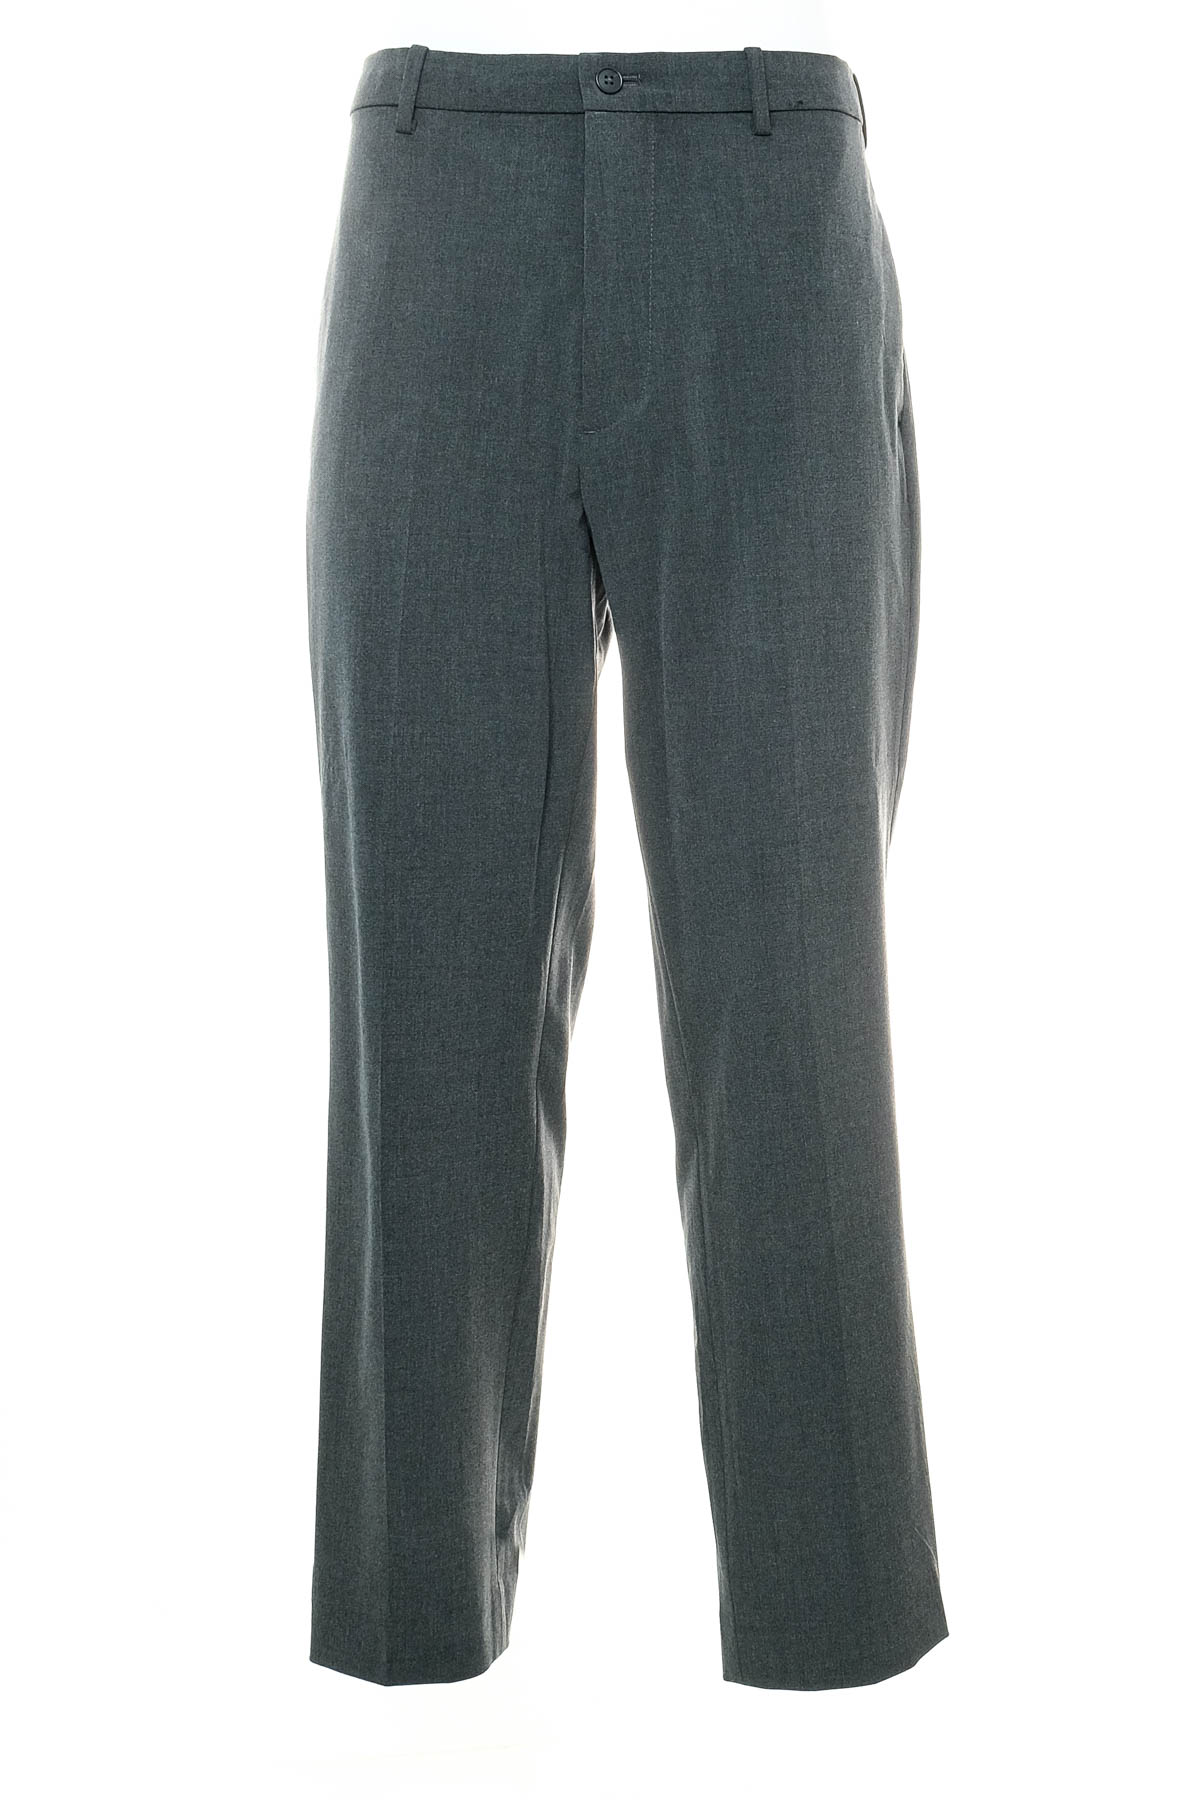 Pantalon pentru bărbați - UNIQLO - 0